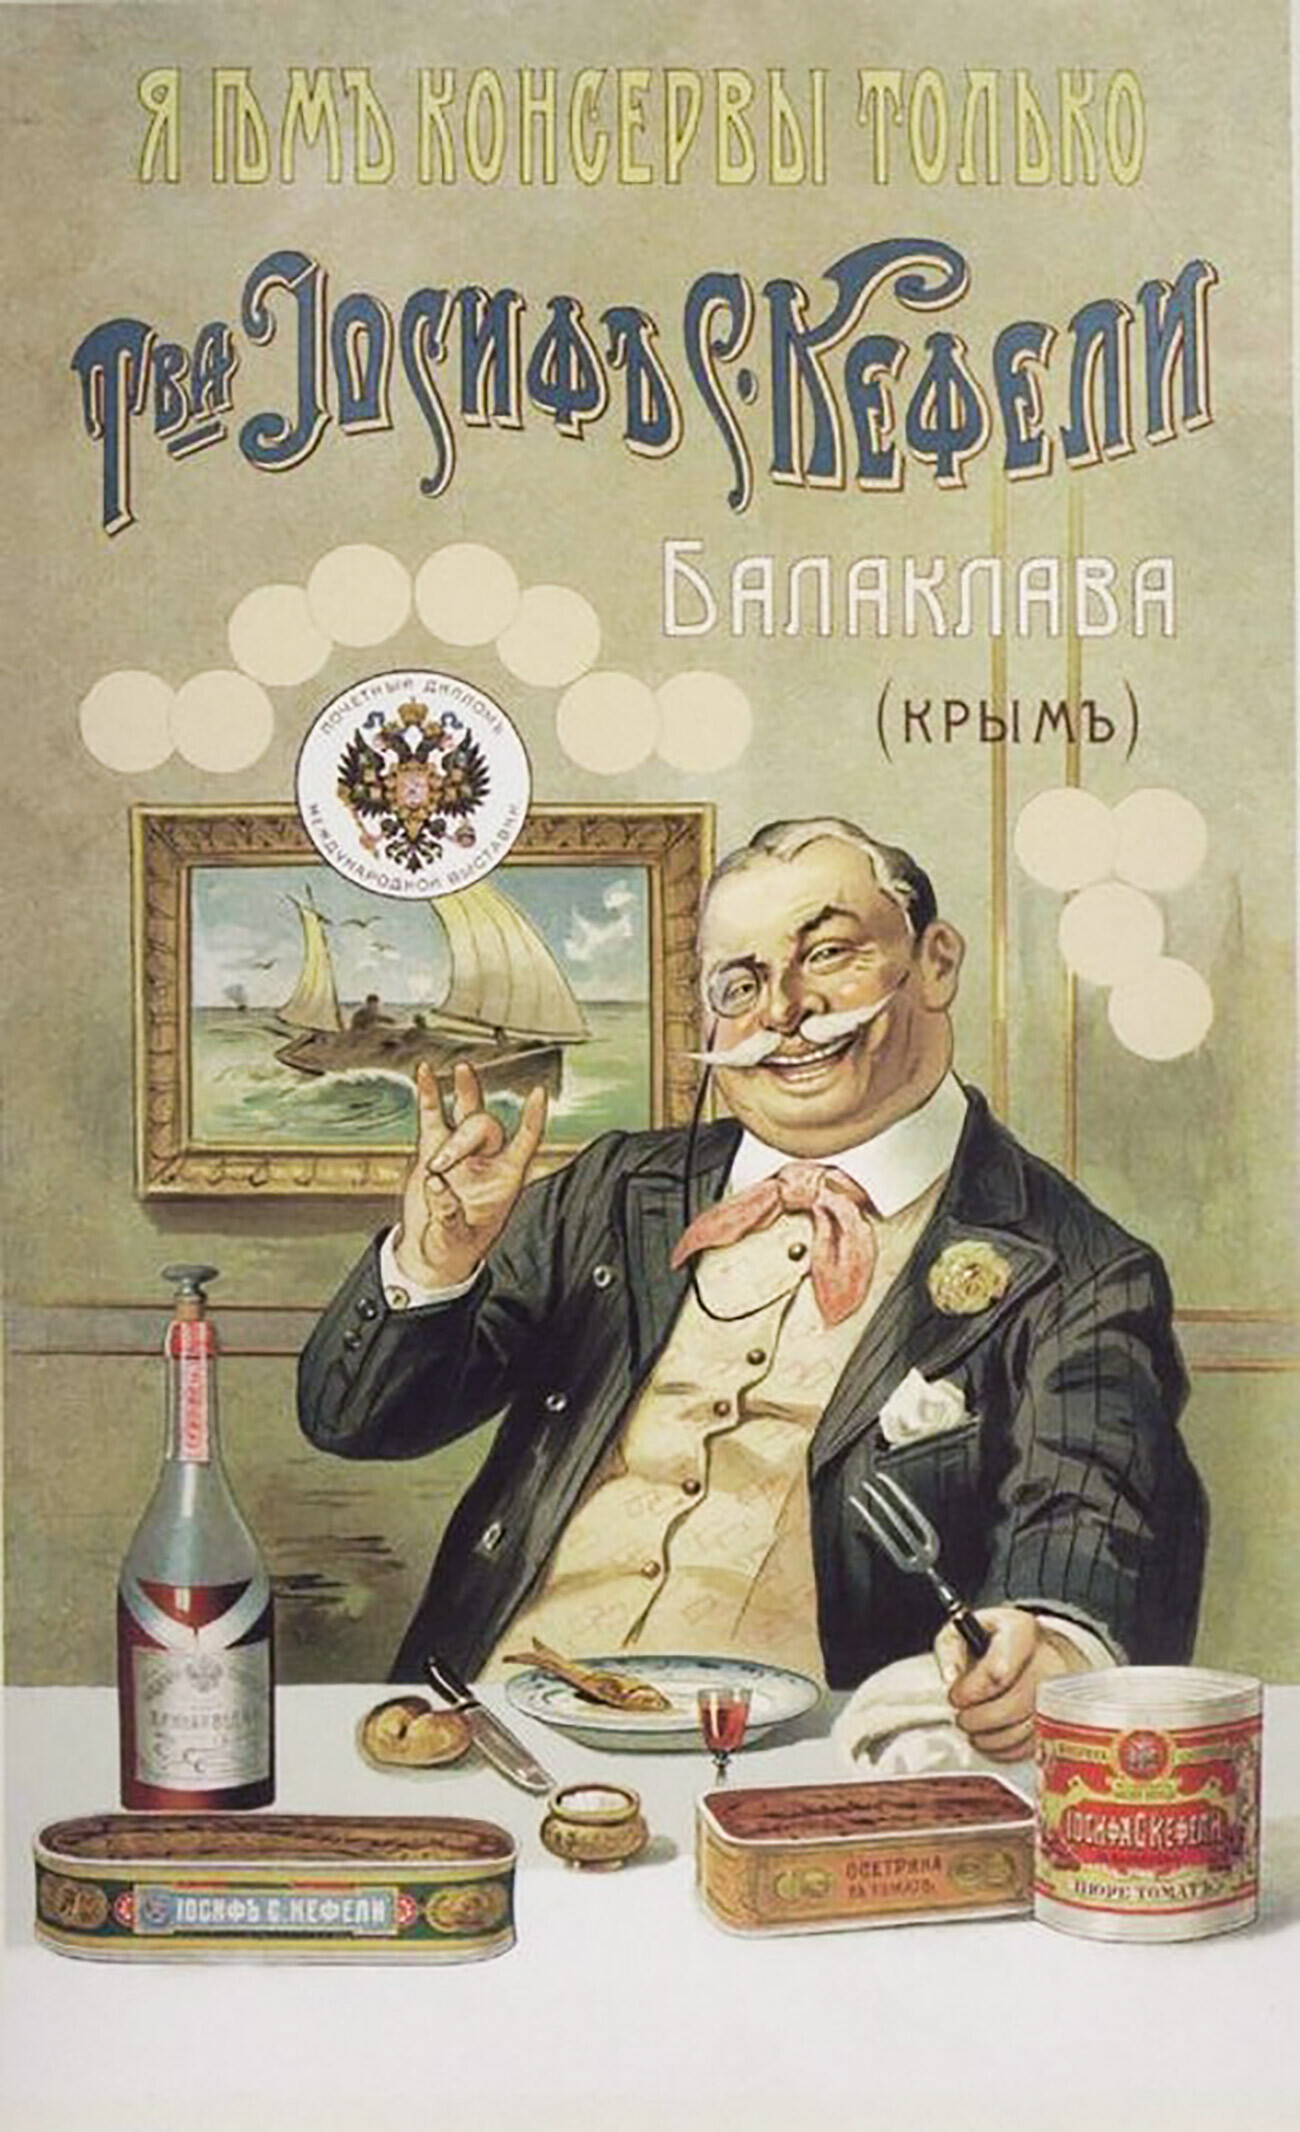 Рекламный постер консервной фабрики Иосифа Кефели 